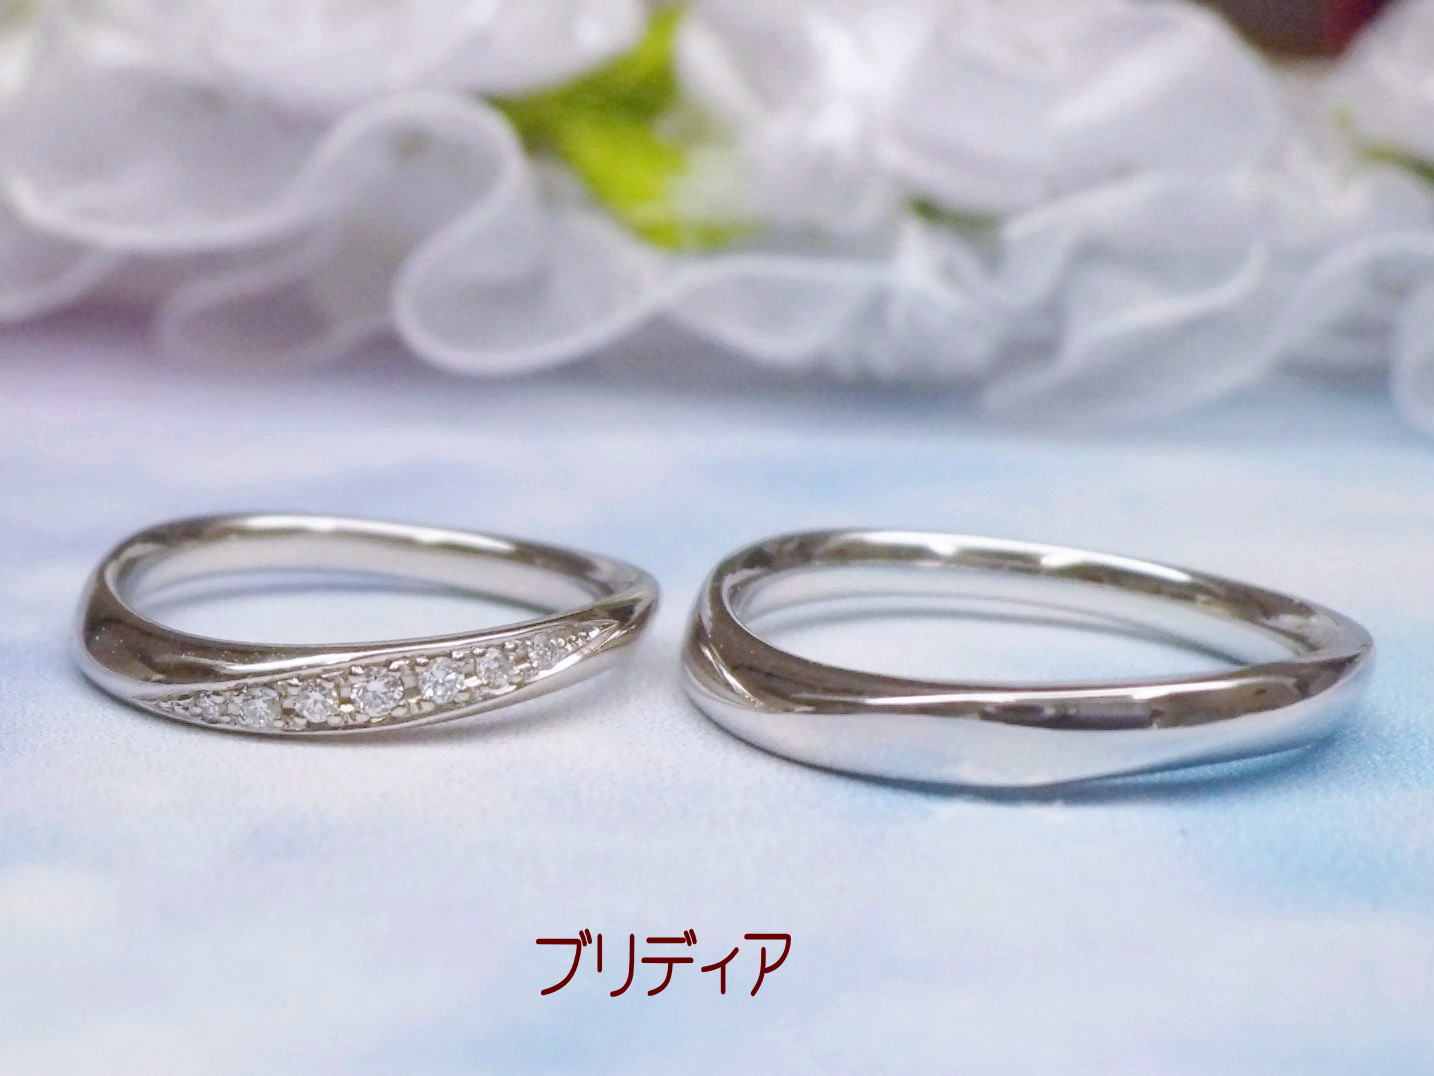 ブリディア・結婚指輪は、しっかりとした造りと着け心地の良さが人気です。